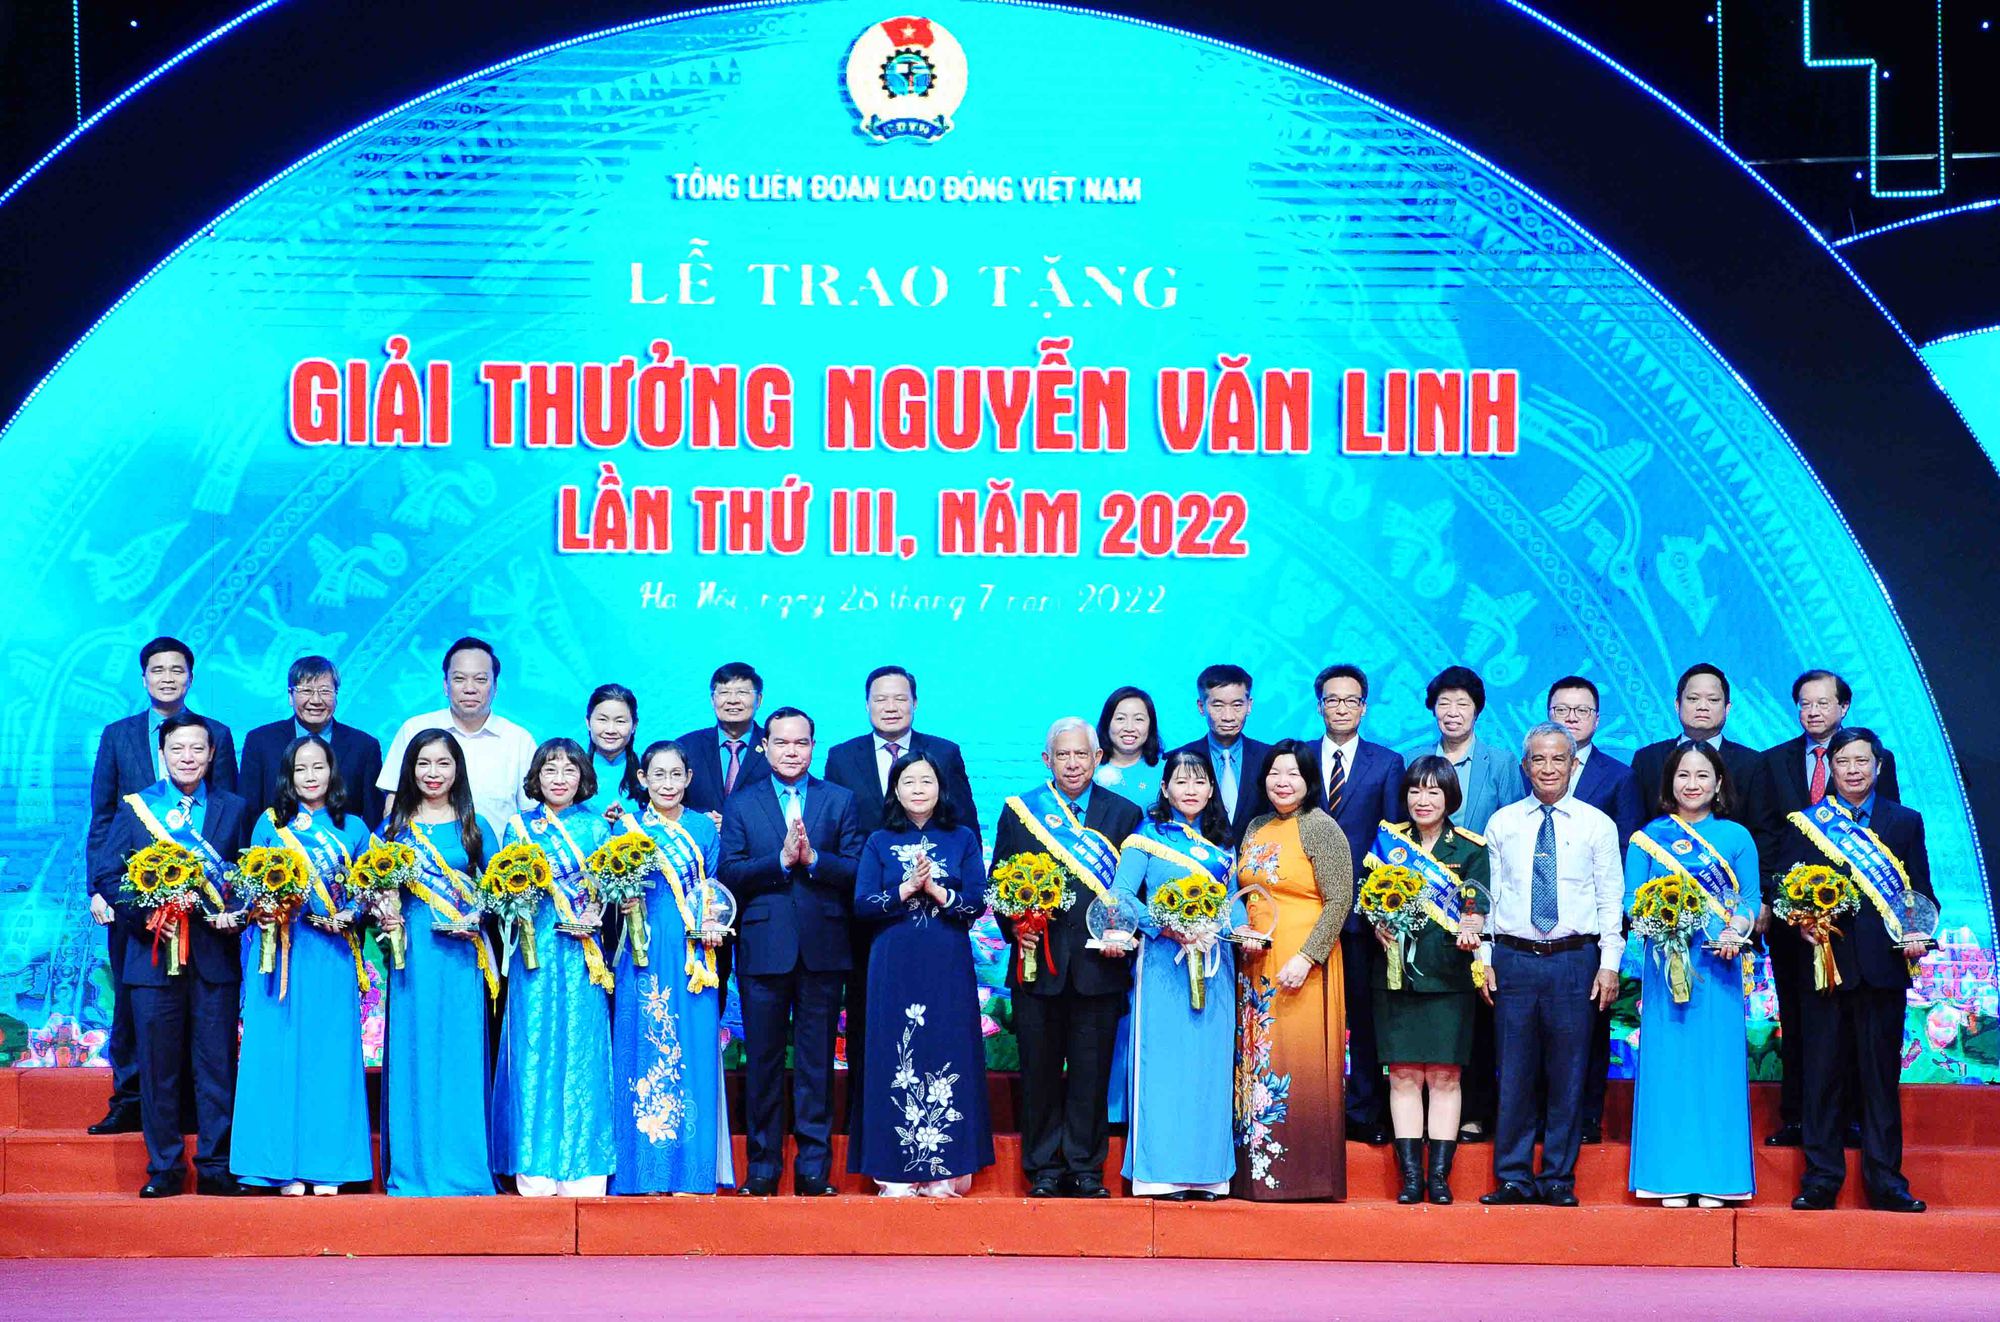 Trao Giải thưởng Nguyễn Văn Linh cho 10 cán bộ công đoàn tiêu biểu, xuất sắc - Ảnh 1.